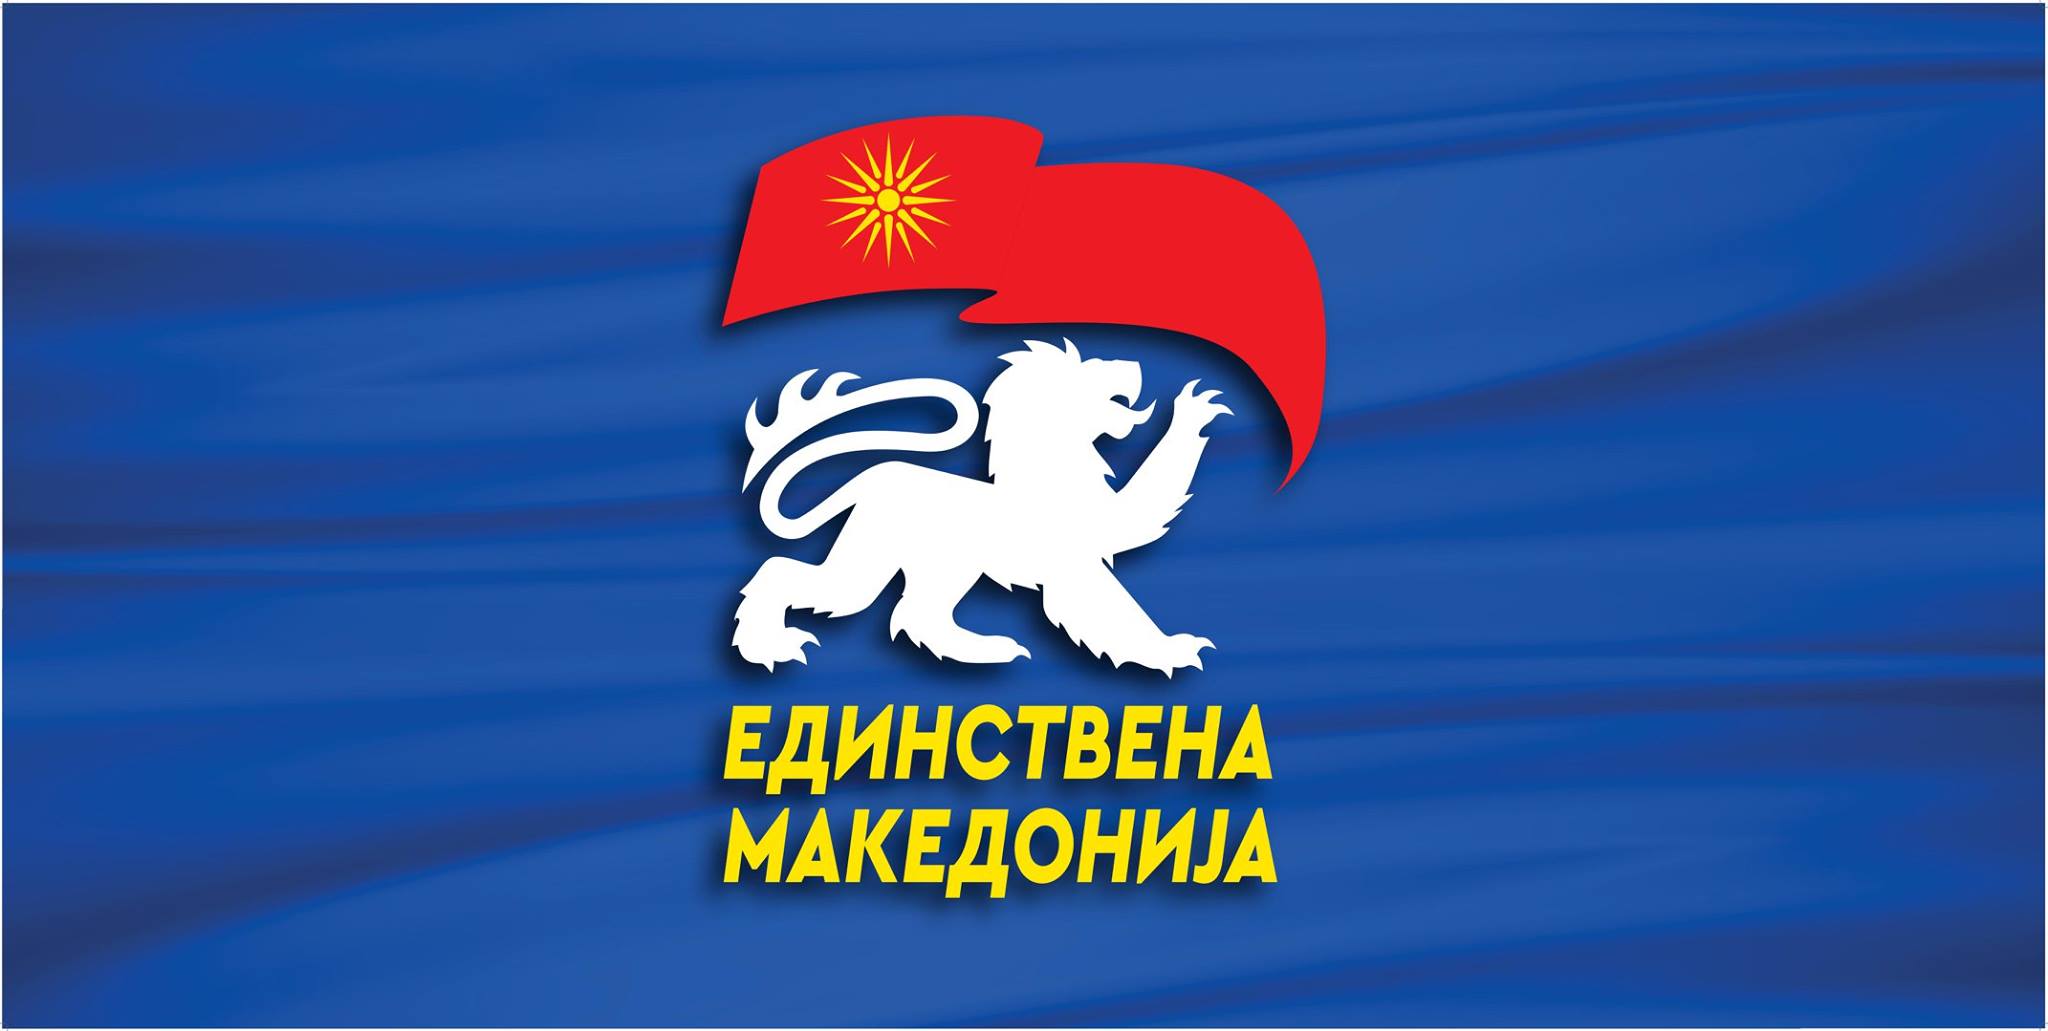 Единствена Македонија: Зошто СДСМ се предомисли и не го прифаќа предлогот на ВМРО-ДПМНЕ веднаш да се изгласа една изборна единица